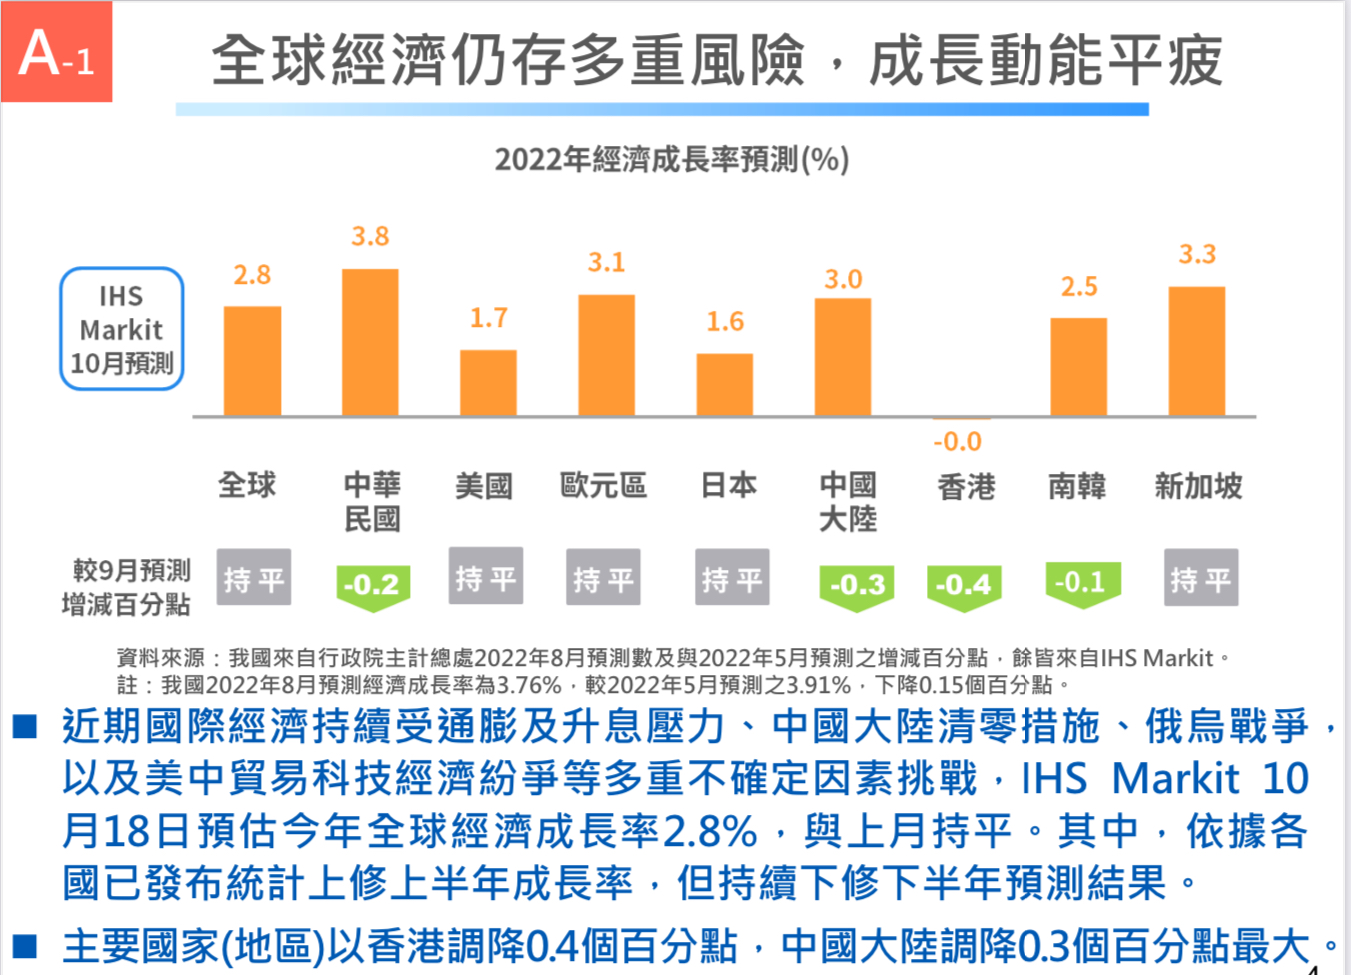 台湾経済:2022年10月末時点での現在の経済状況